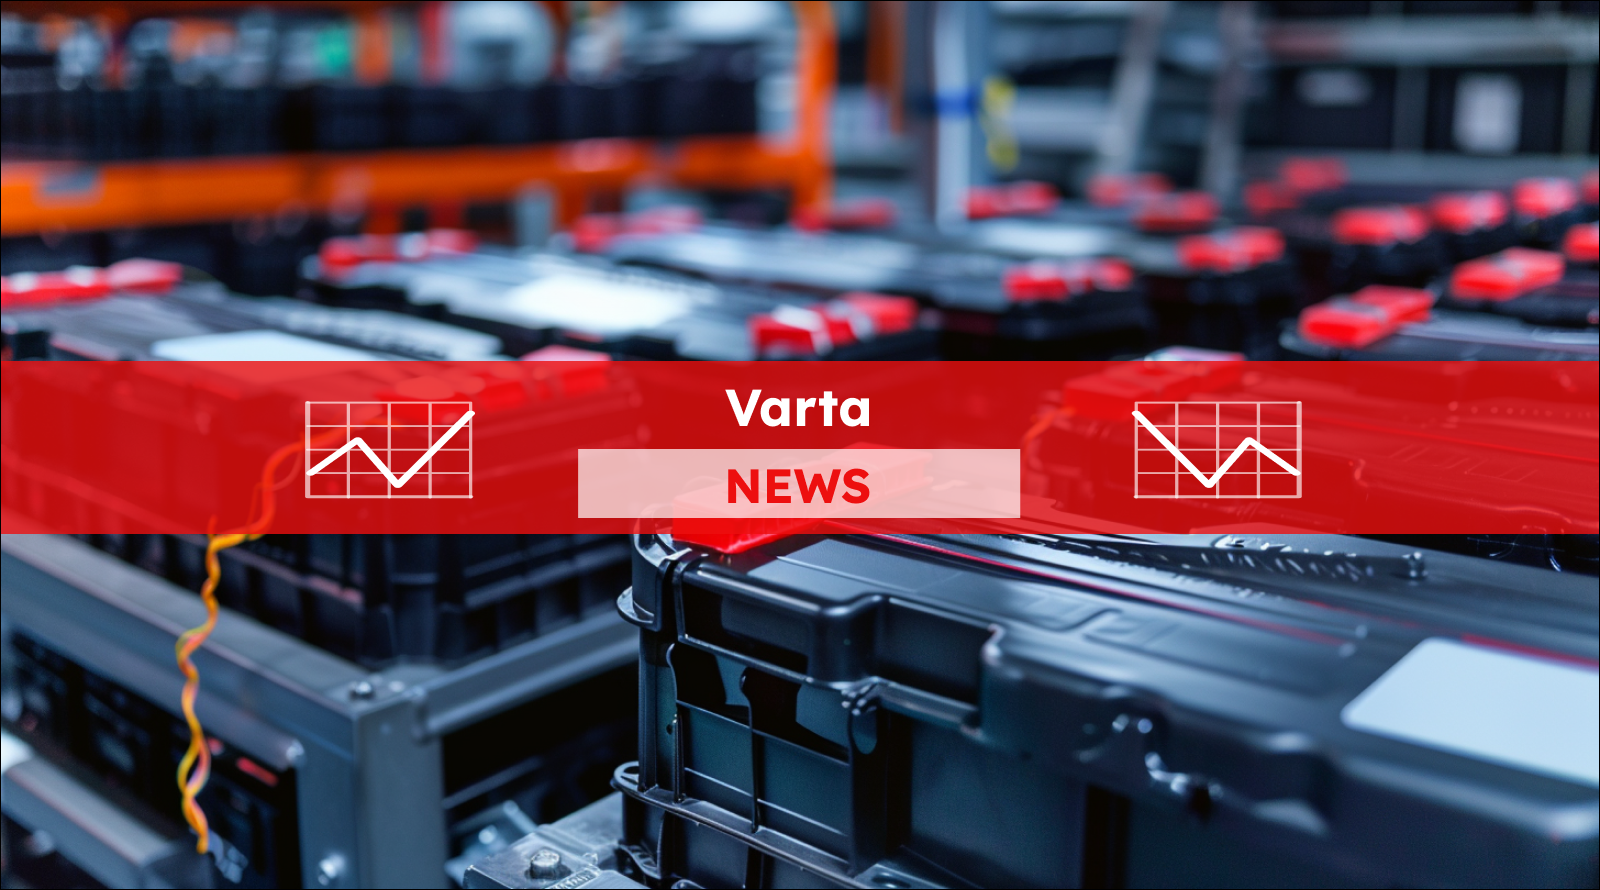 eine Reihe von Autobatterien auf einem Fließband in einer Fabrik,  mit einem Varta NEWS Banner.